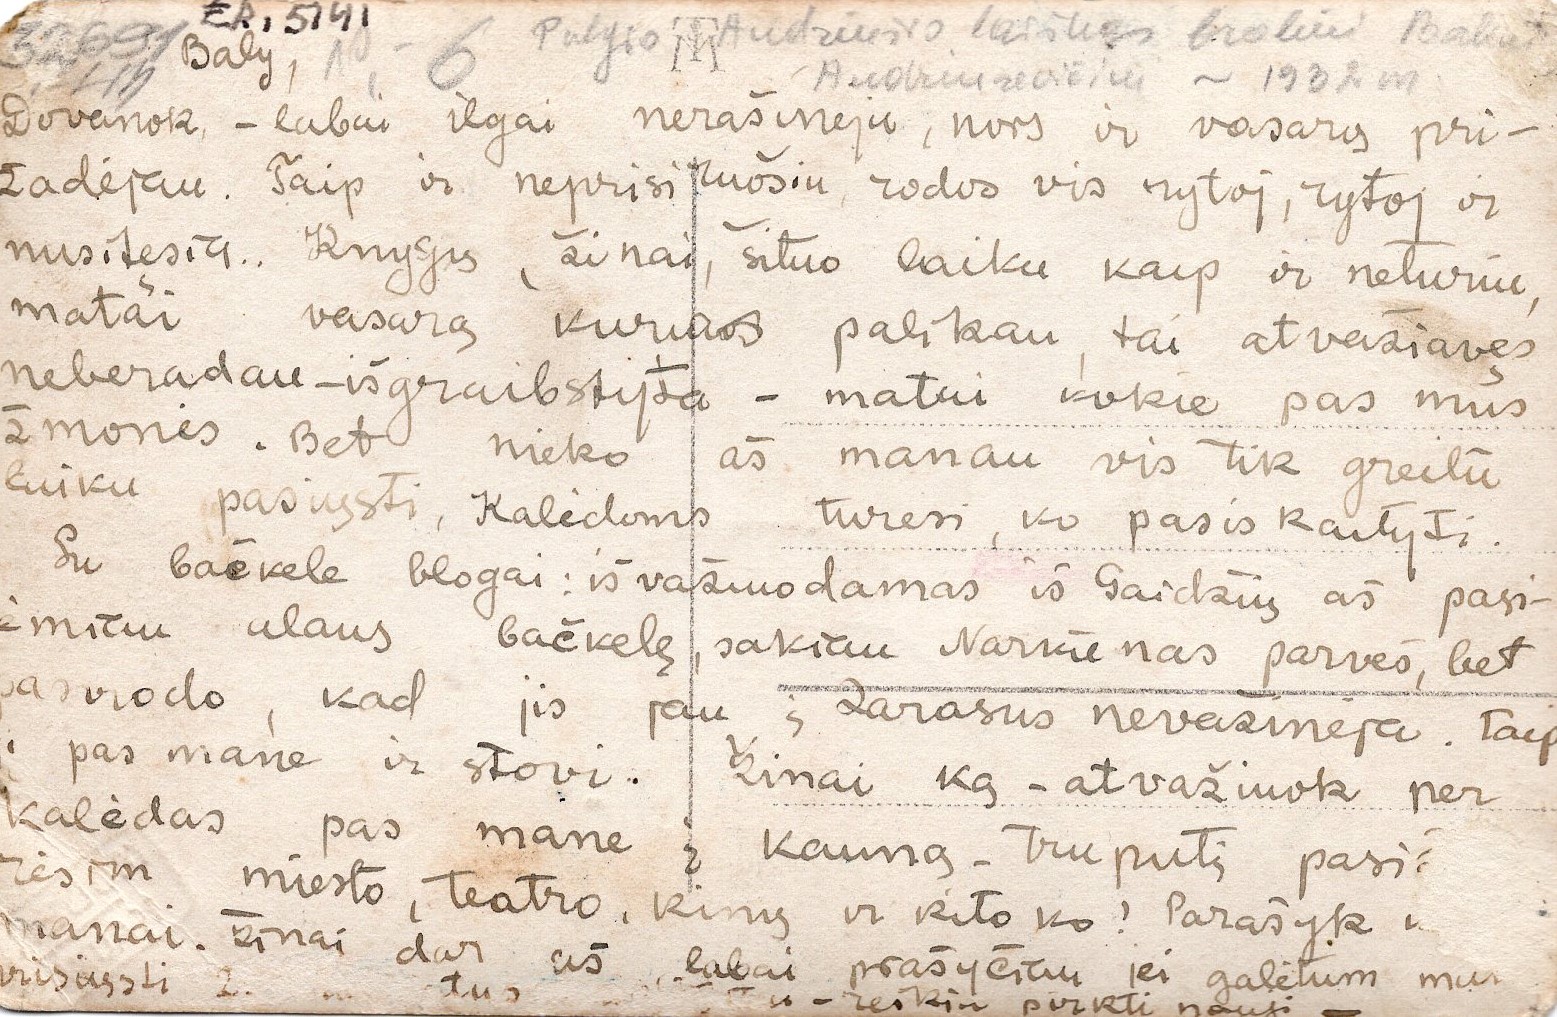 P. Andriušio laiškas broliui Baliui. Kaunas, apie 1932 m. MLLM 32691